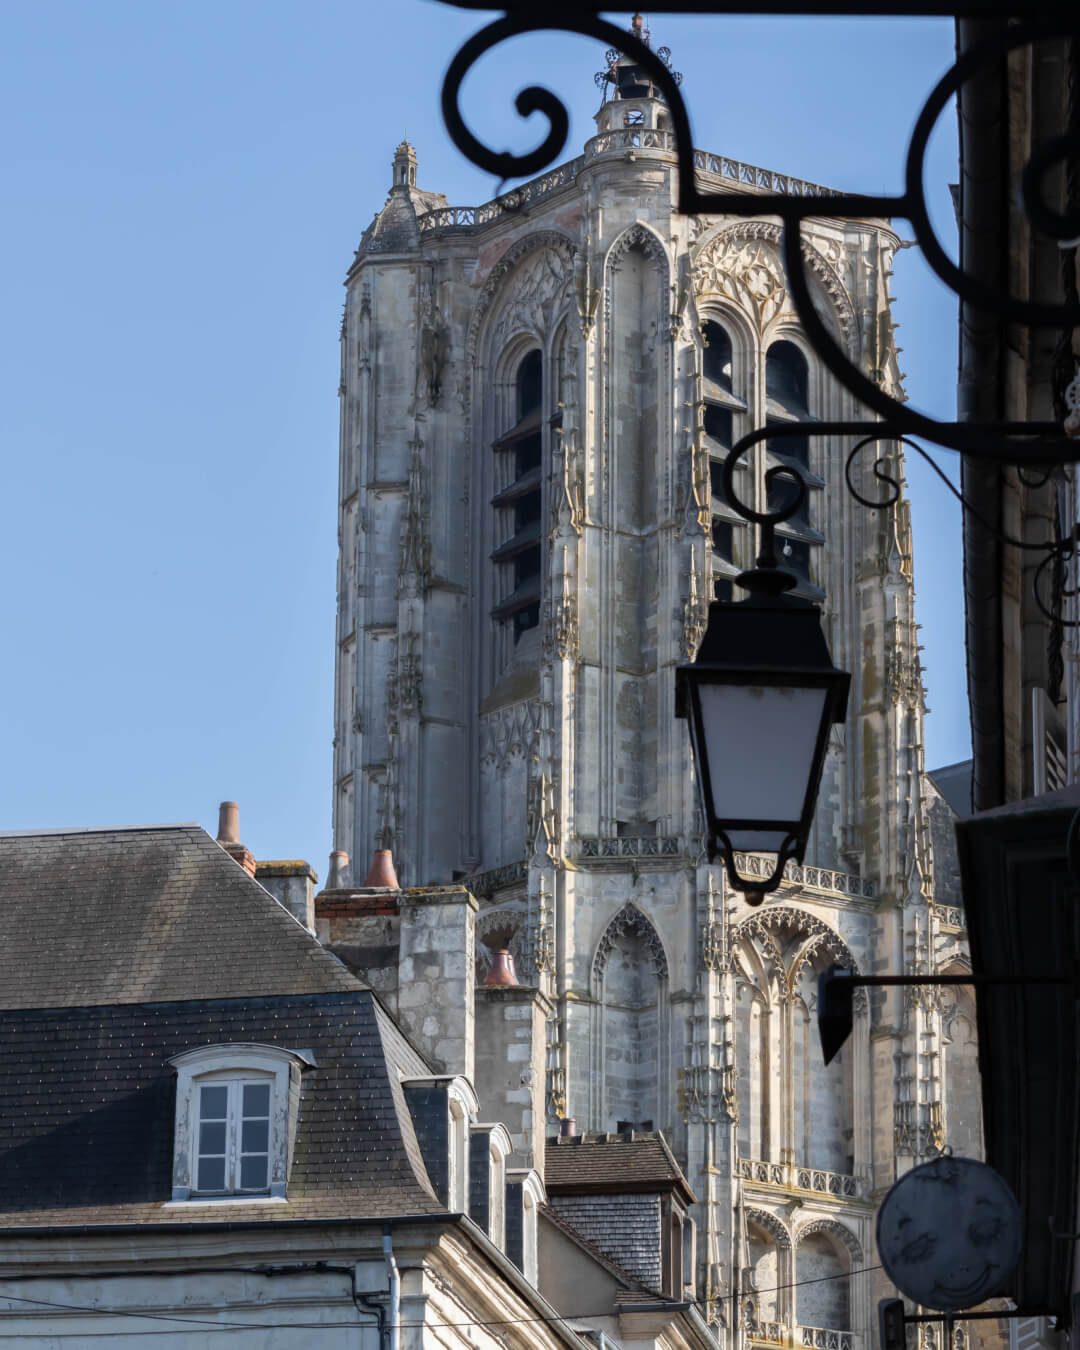 Vue de la tour de beurre de la cathédrale Saint-Etienne de Bourges, par la rue porte jaune